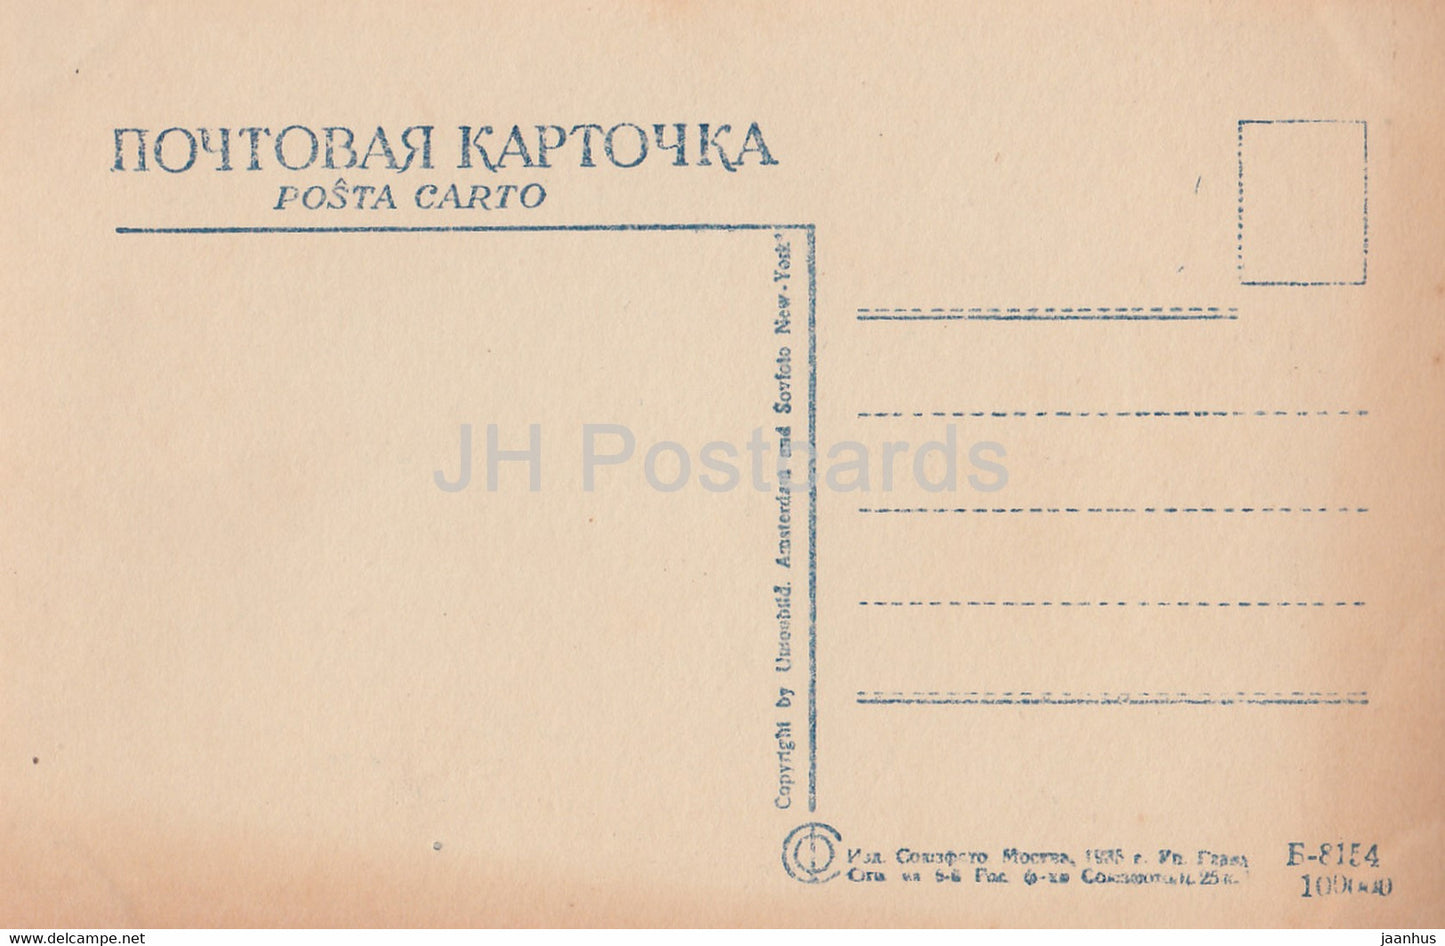 Russischer Schriftsteller Fjodor Dostojewski – alte Postkarte – 1935 – Russland UdSSR – unbenutzt